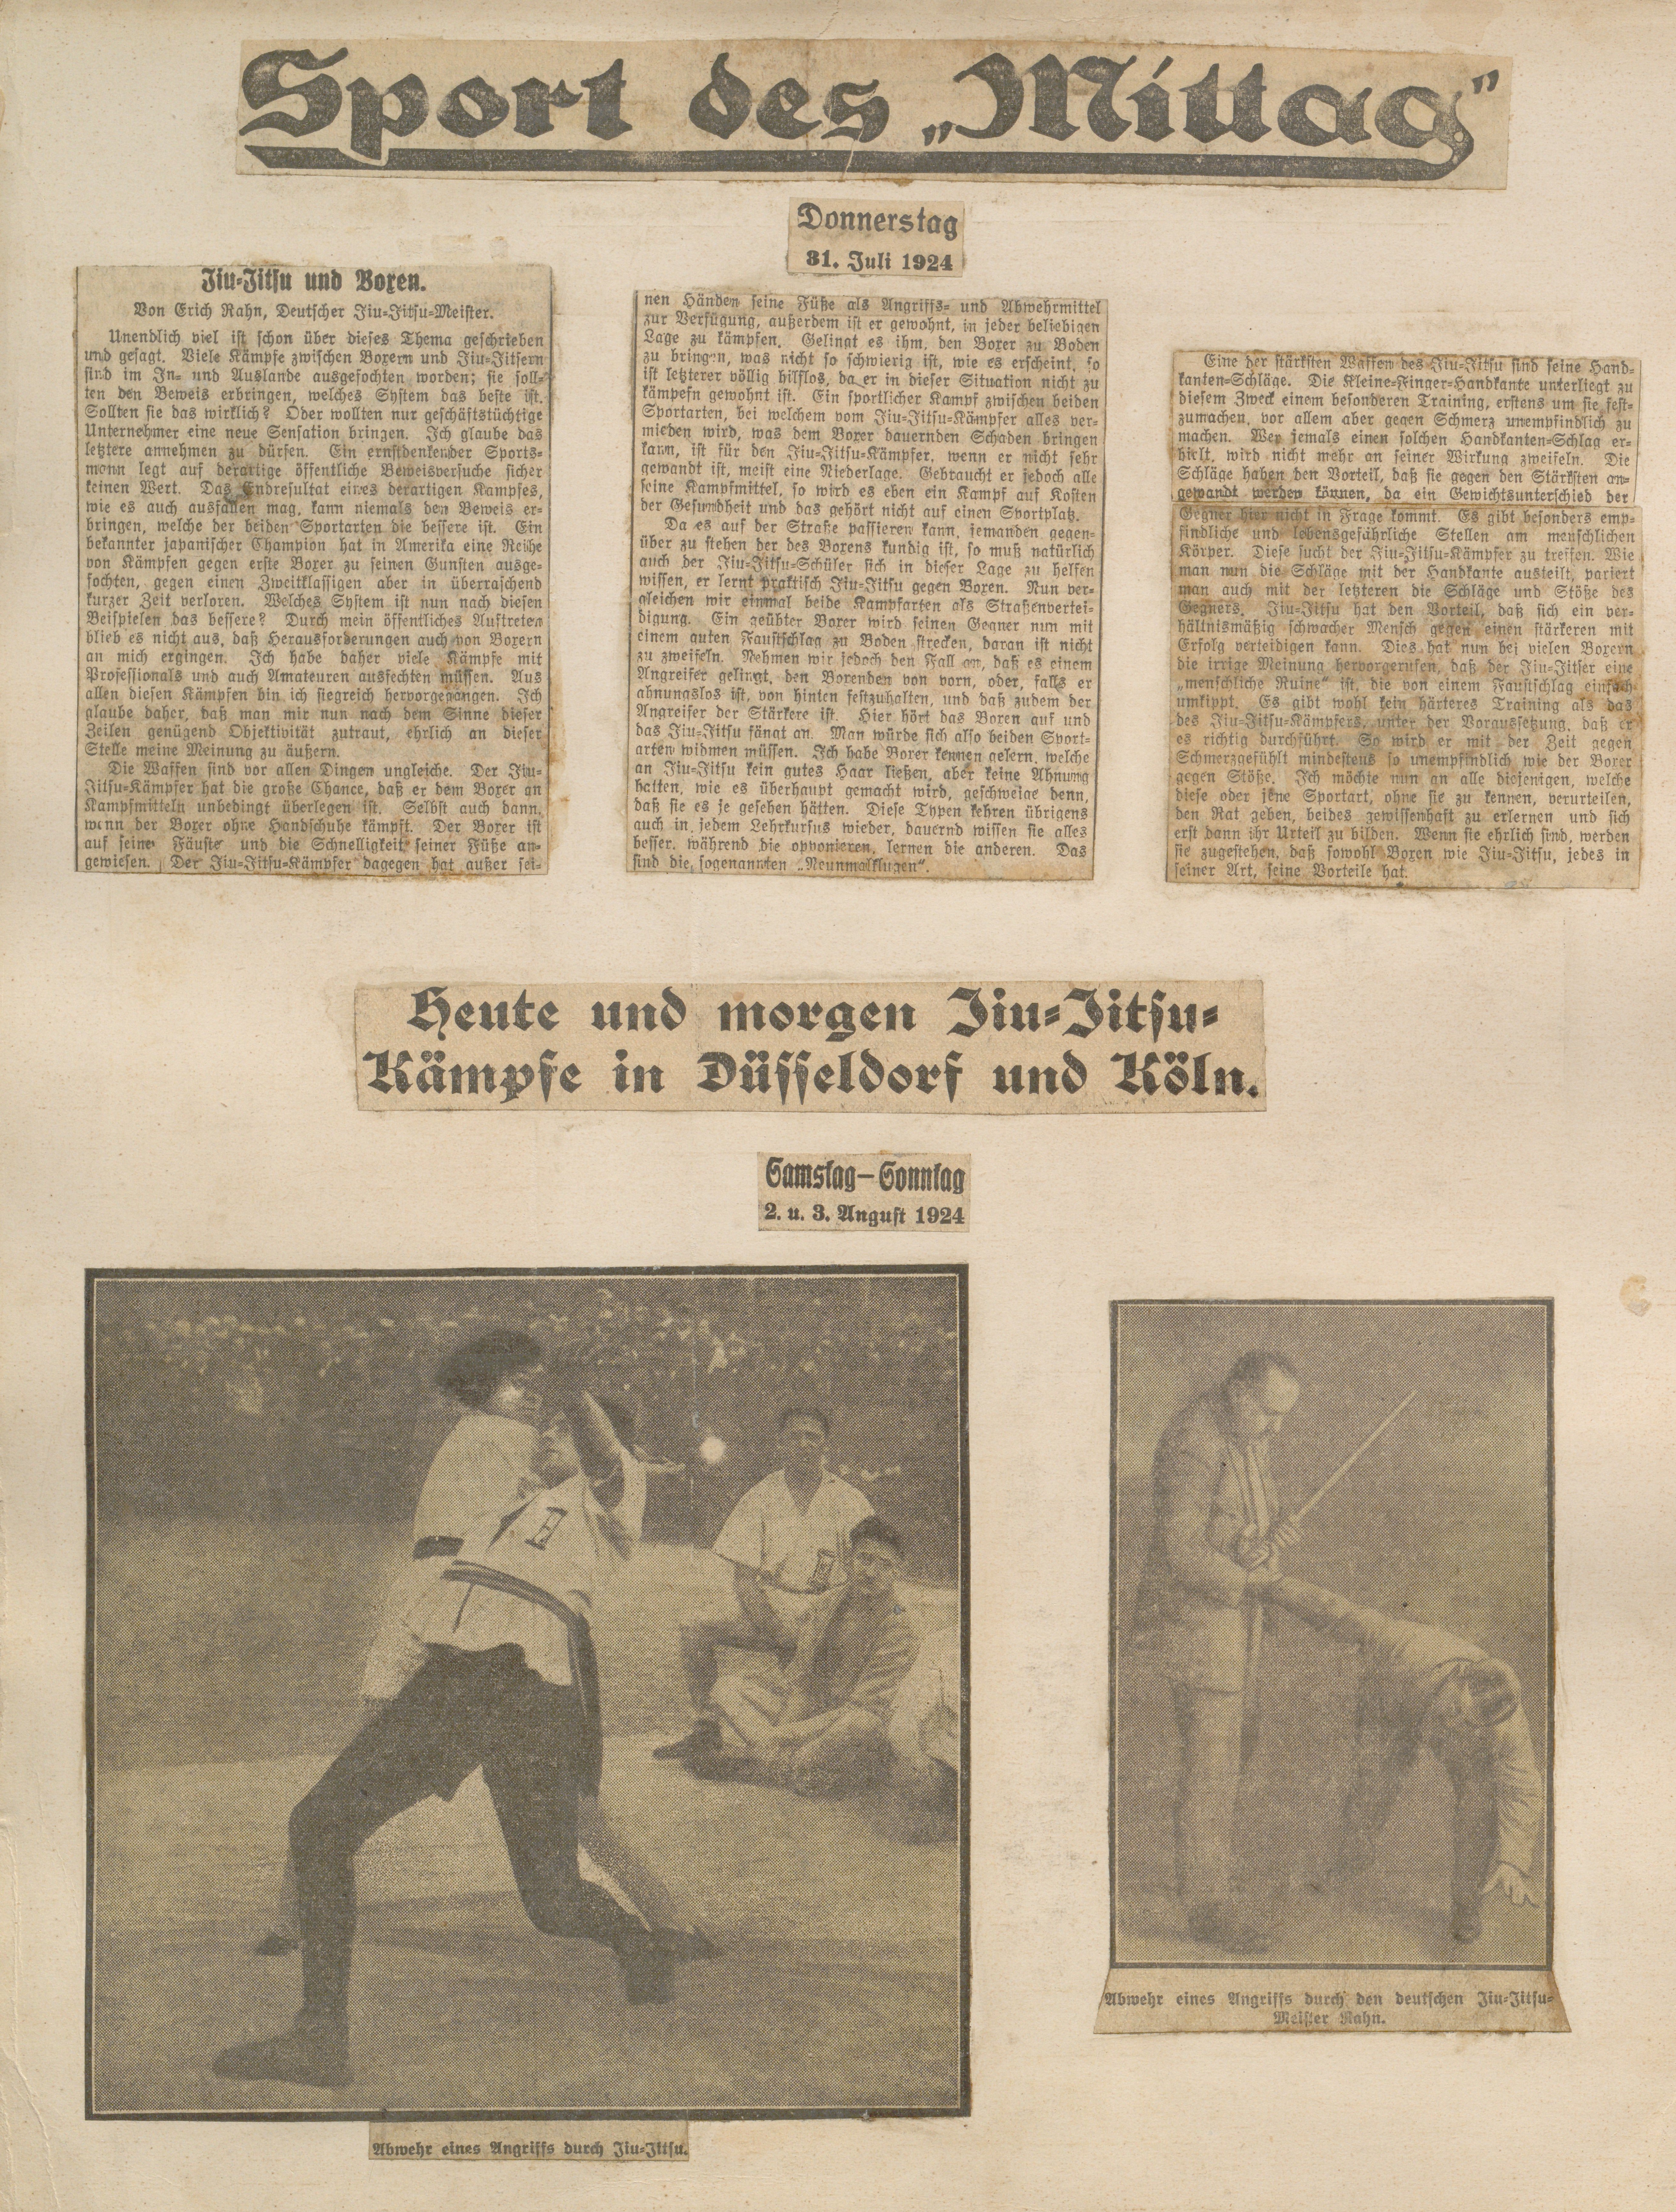 Album Erich Rahn; Zeitungsartikel in Sport des Mittag (Sportmuseum Berlin CC0)